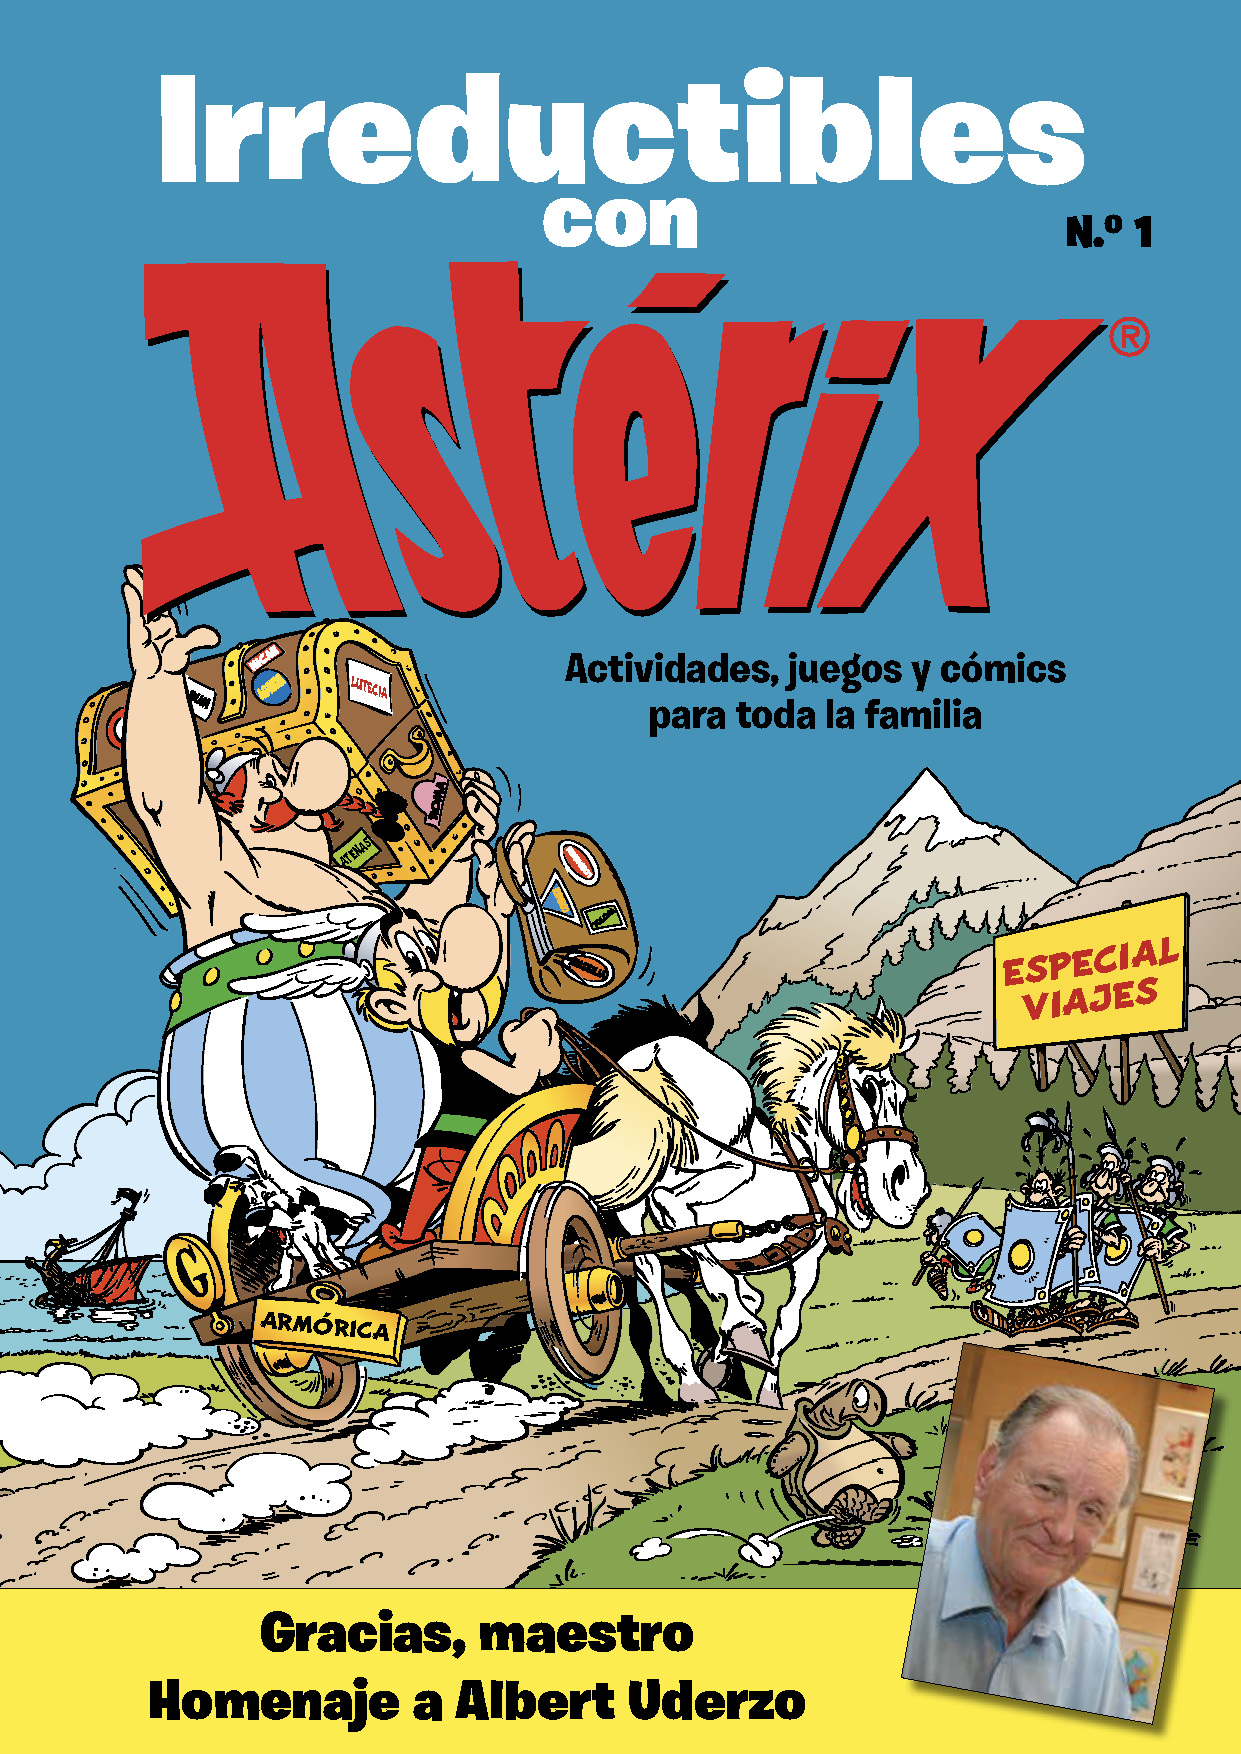 Descárgate gratis la revista Astérix! - Astérix - Le site officiel